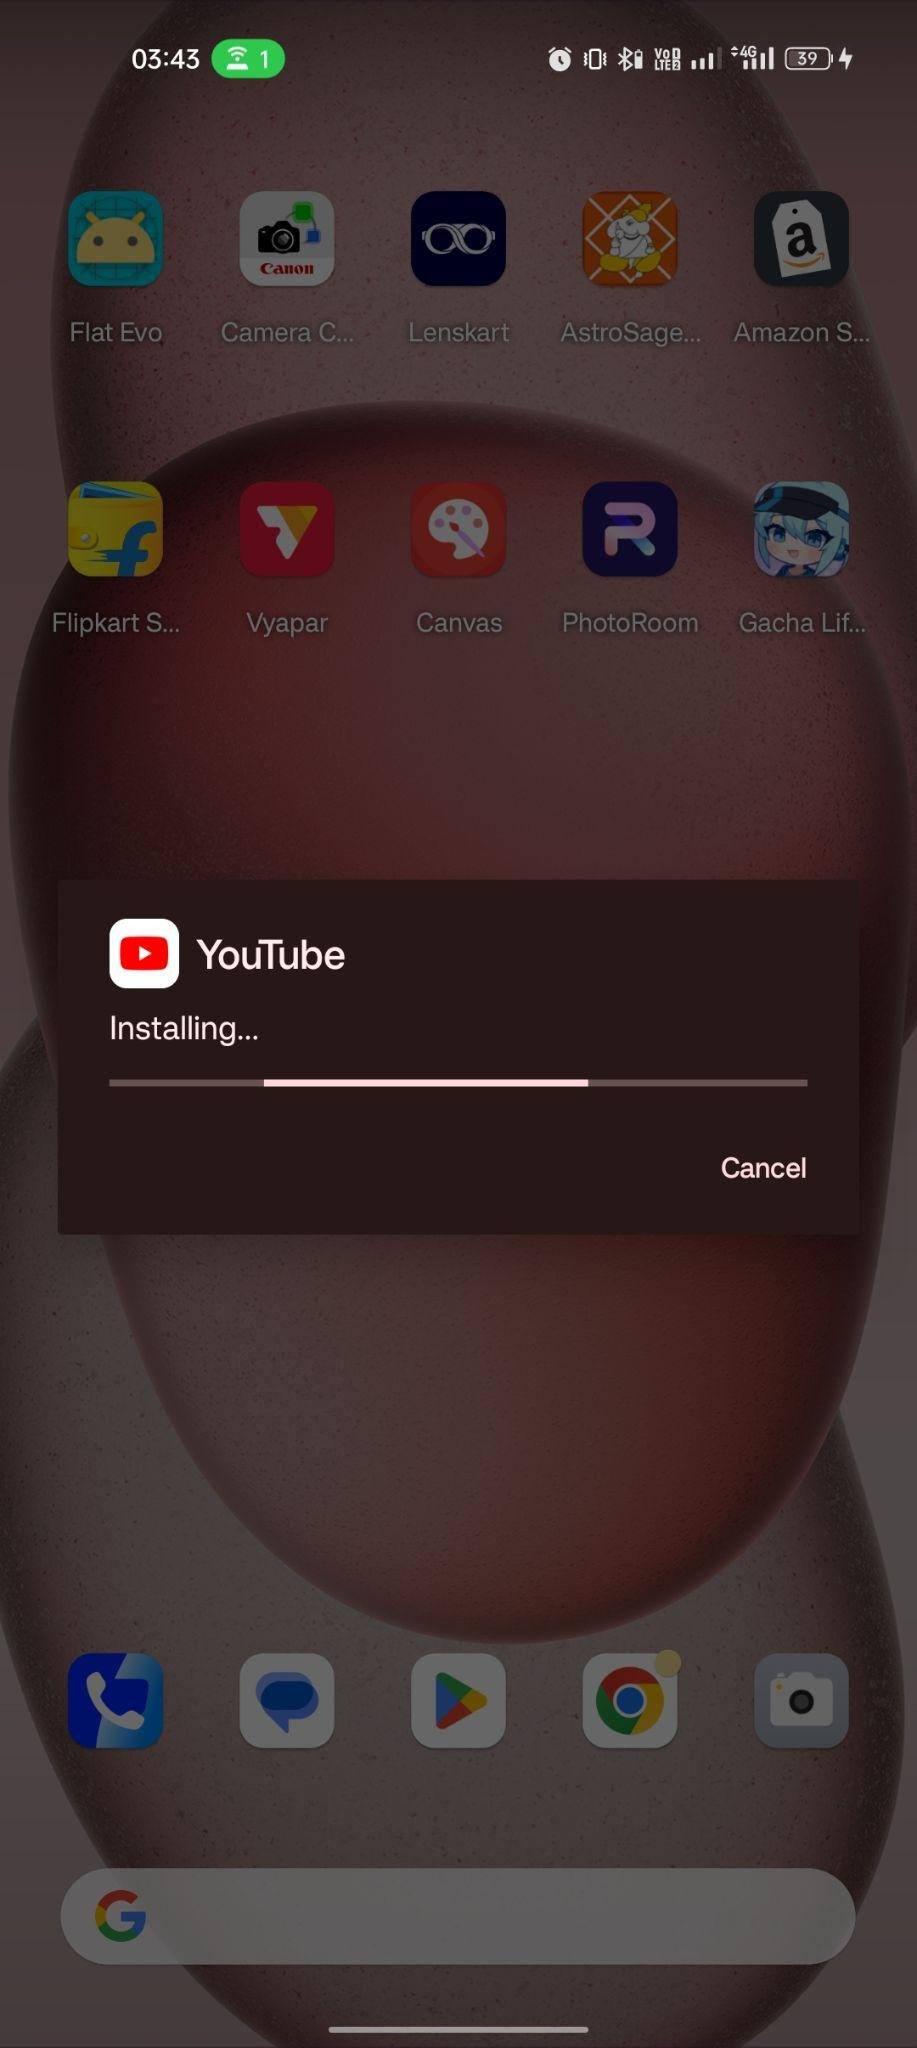 YouTube apk installing